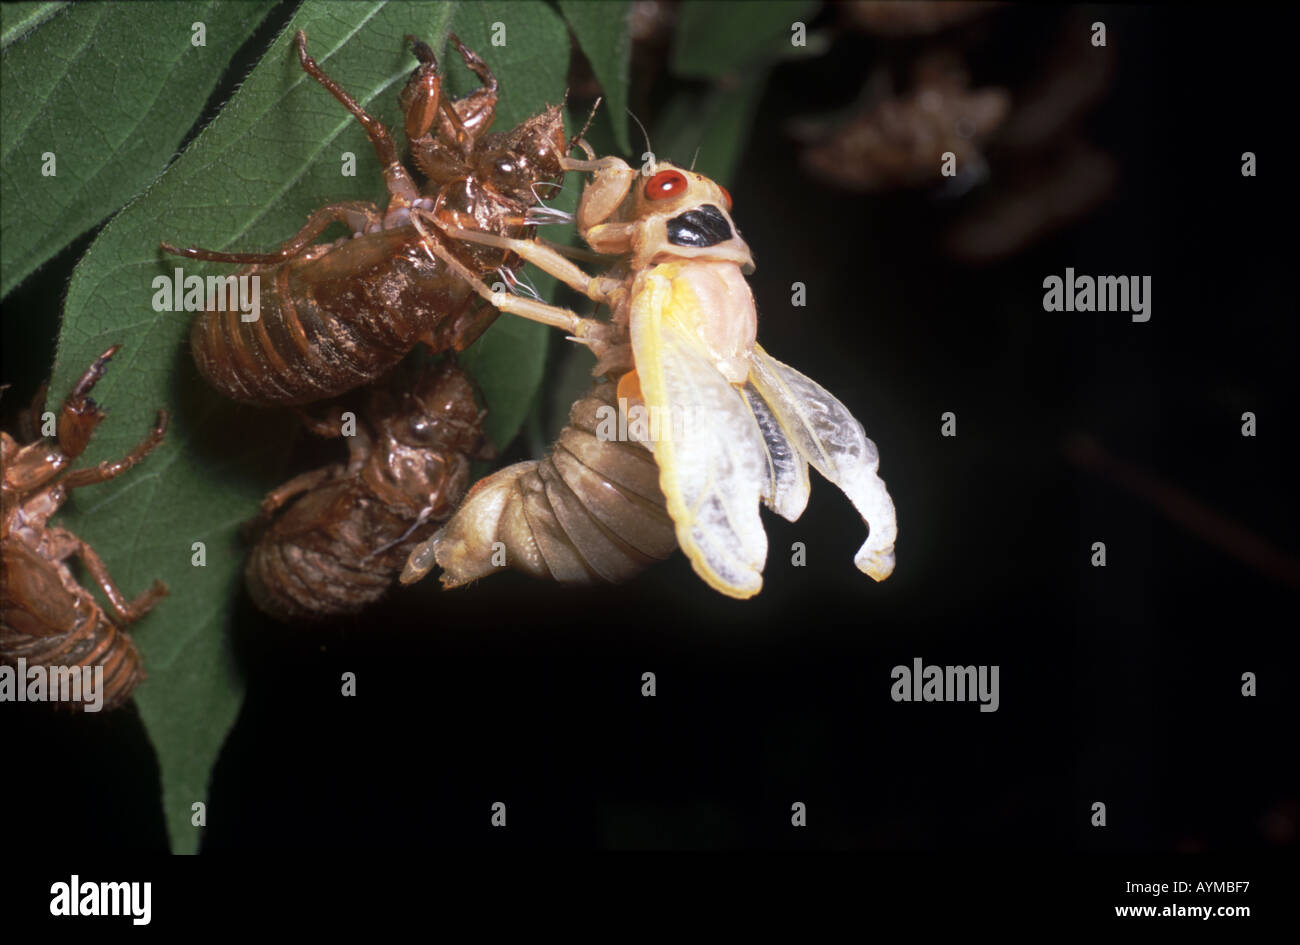 Seconda immagine in serie che mostra 17 anno cicala muta in pazienti adulti l'animale ha completamente a sinistra la ninfa ovipositor shell Foto Stock